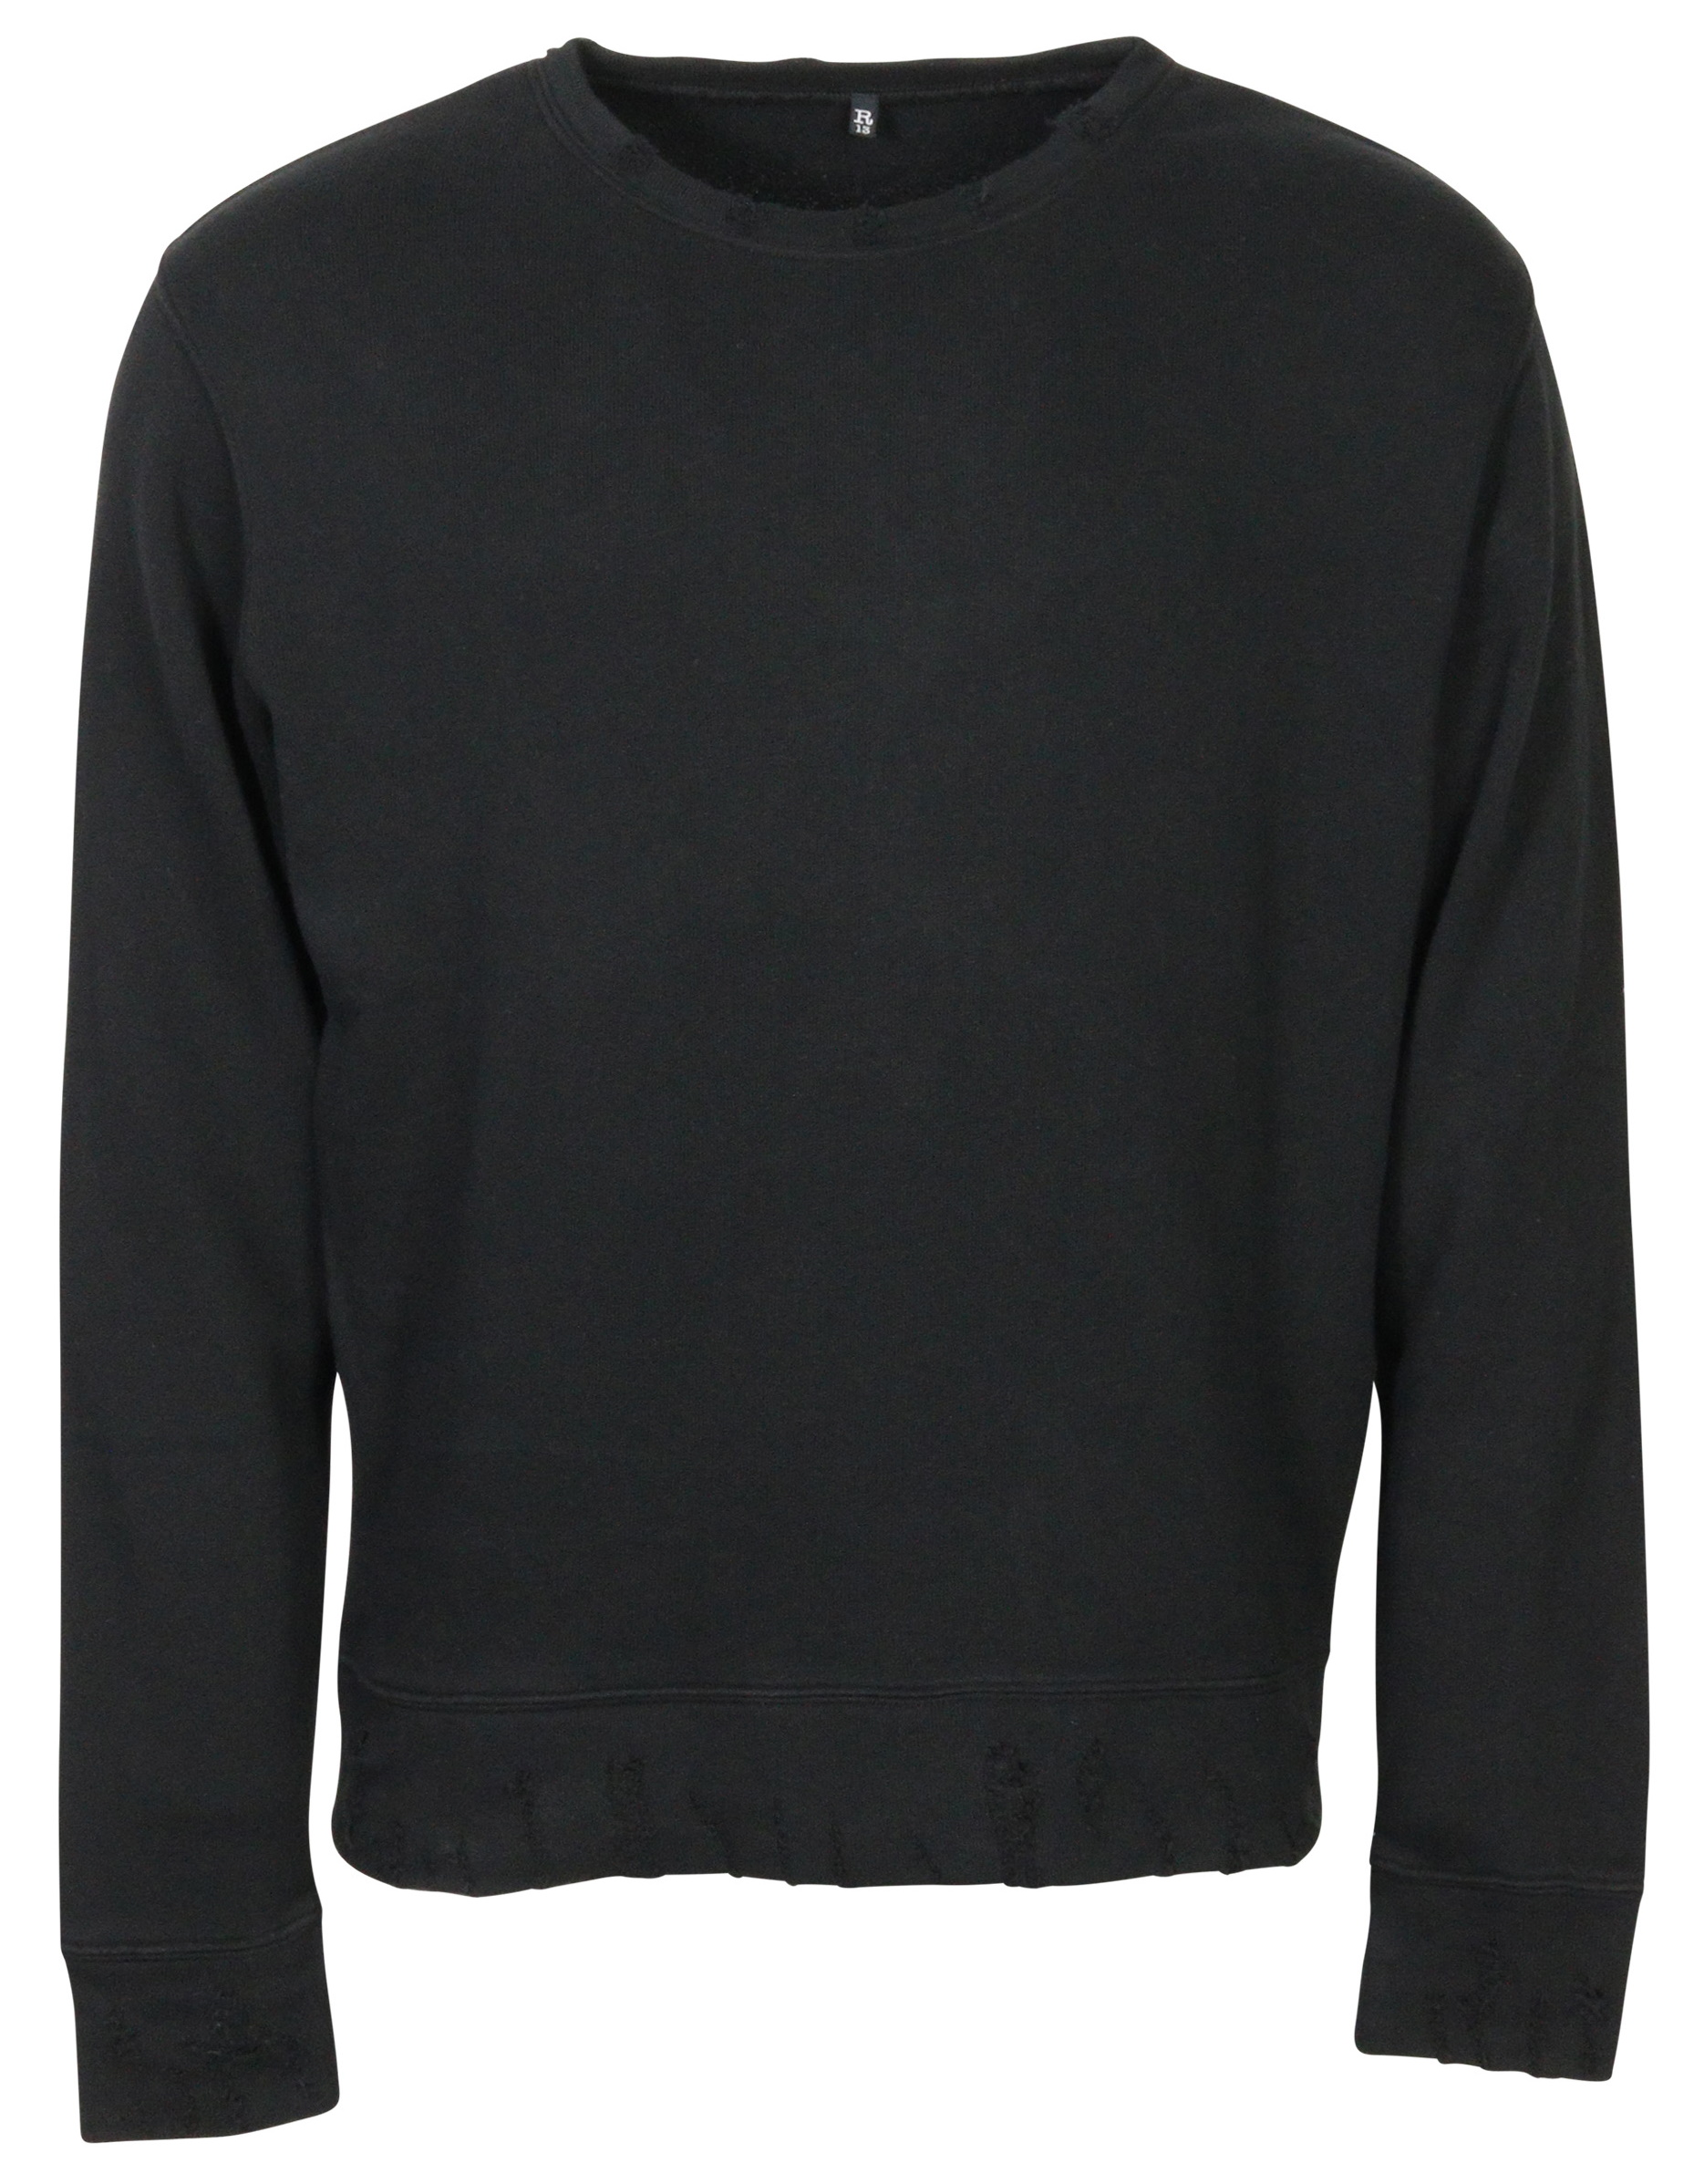 R13 Vintage Sweatshirt in Black